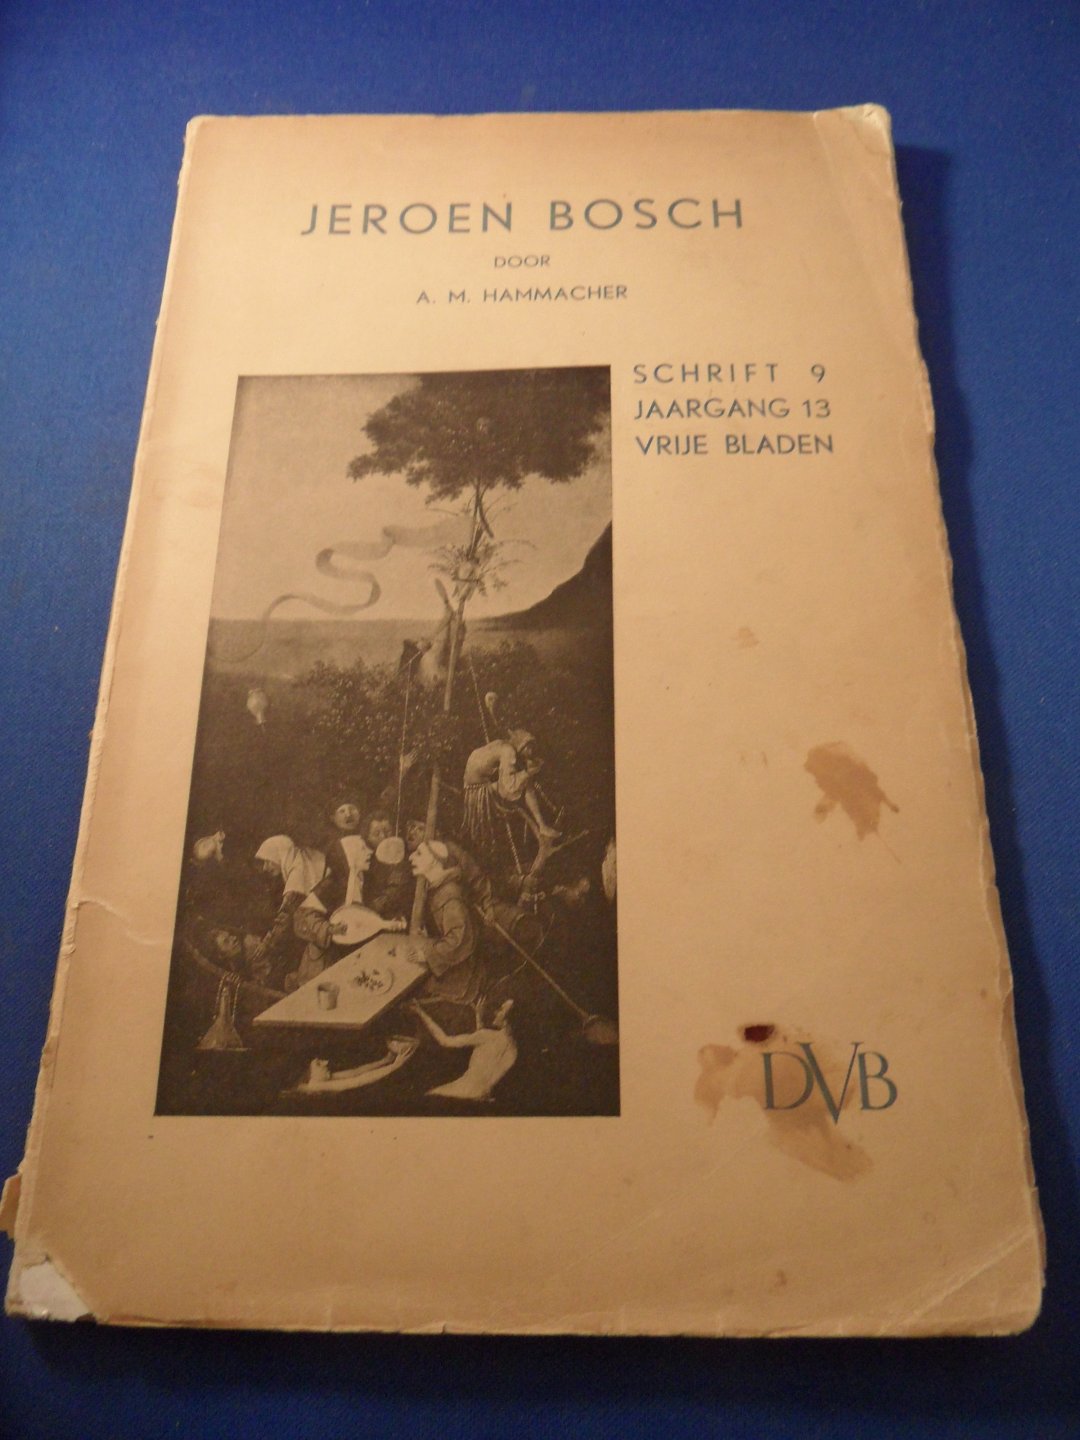 Hammacher, A.M - Jeroen Bosch